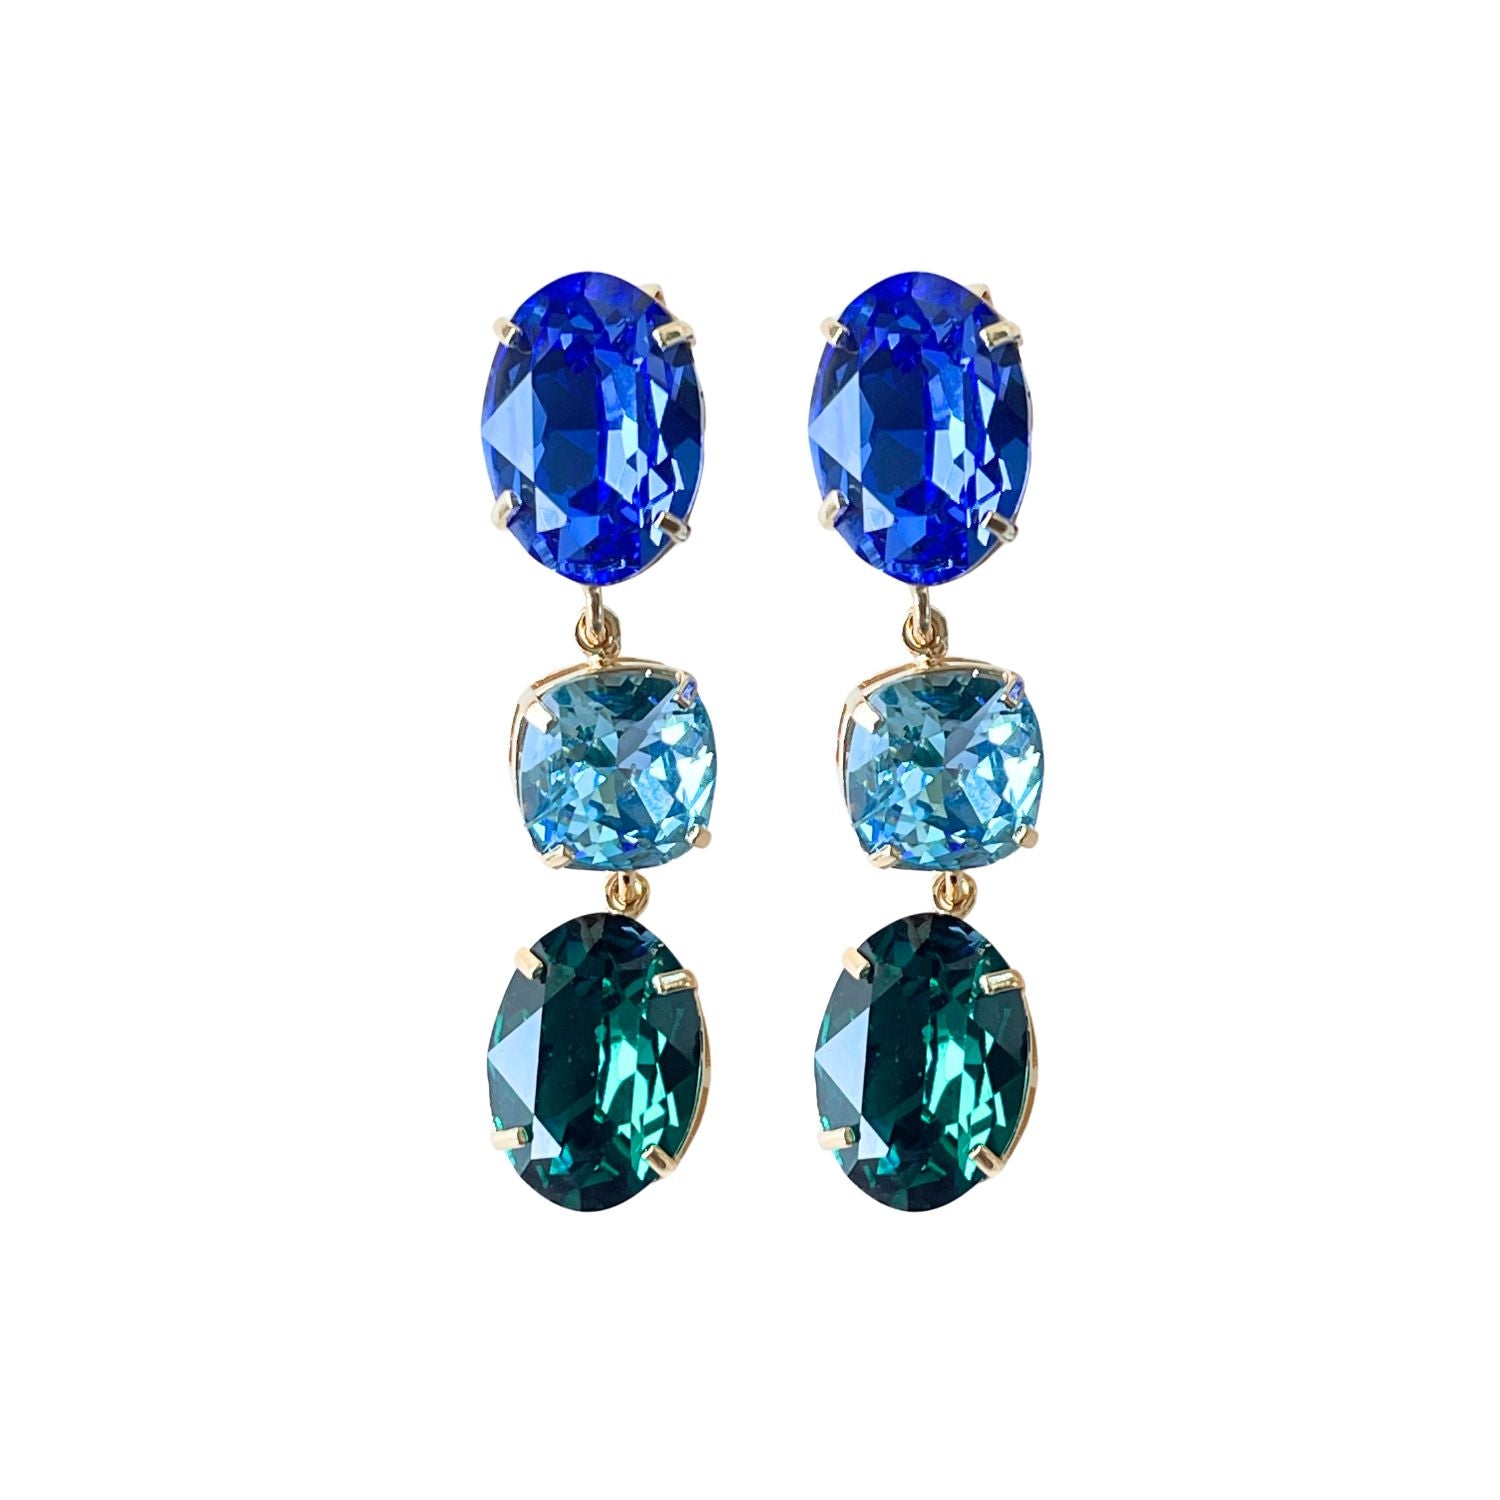 Alt-Text: "Entdecken Sie unsere "GLOW"-Ohrringe mit blau-grünen Kristallen. Die grüne Basis kann allein getragen werden und verleiht einen dezenten, aber wunderschönen Look. Die weltberühmten Kristalle sorgen für Glanz und zeitlose Eleganz."